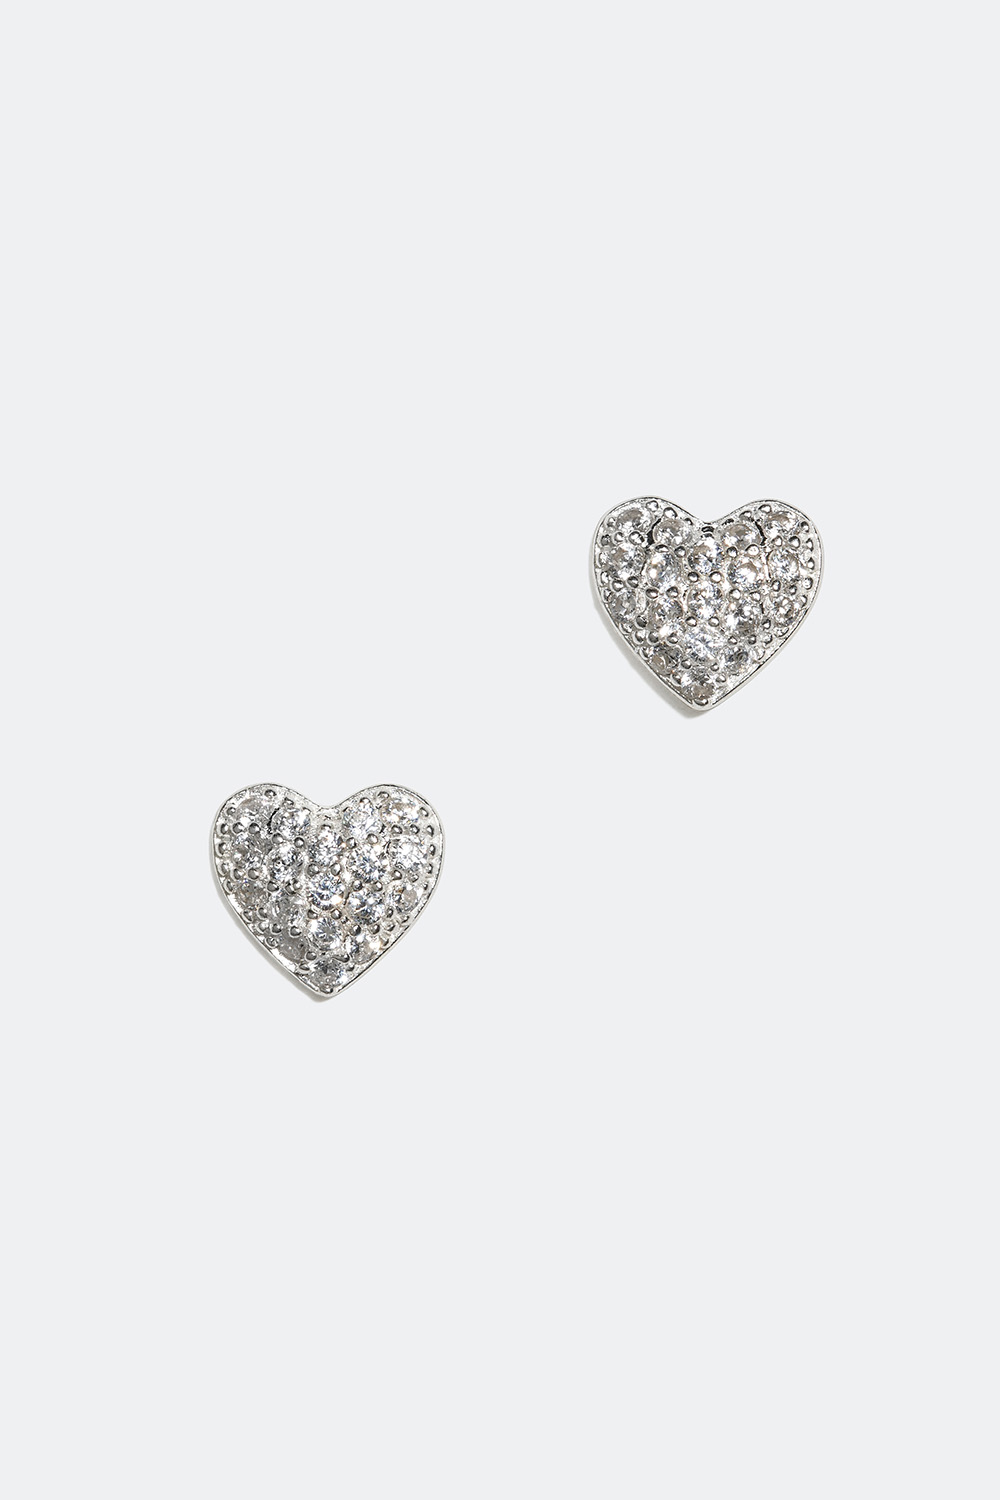 Aidosta hopeasta valmistetut sydämenmuotoiset nappikorvakorut Cubic Zirkonia -kivillä ryhmässä Aitoa Hopeaa / Hopeiset korvakorut / Nappikorvakorut aitoa hopeaa @ Glitter (553002120201)